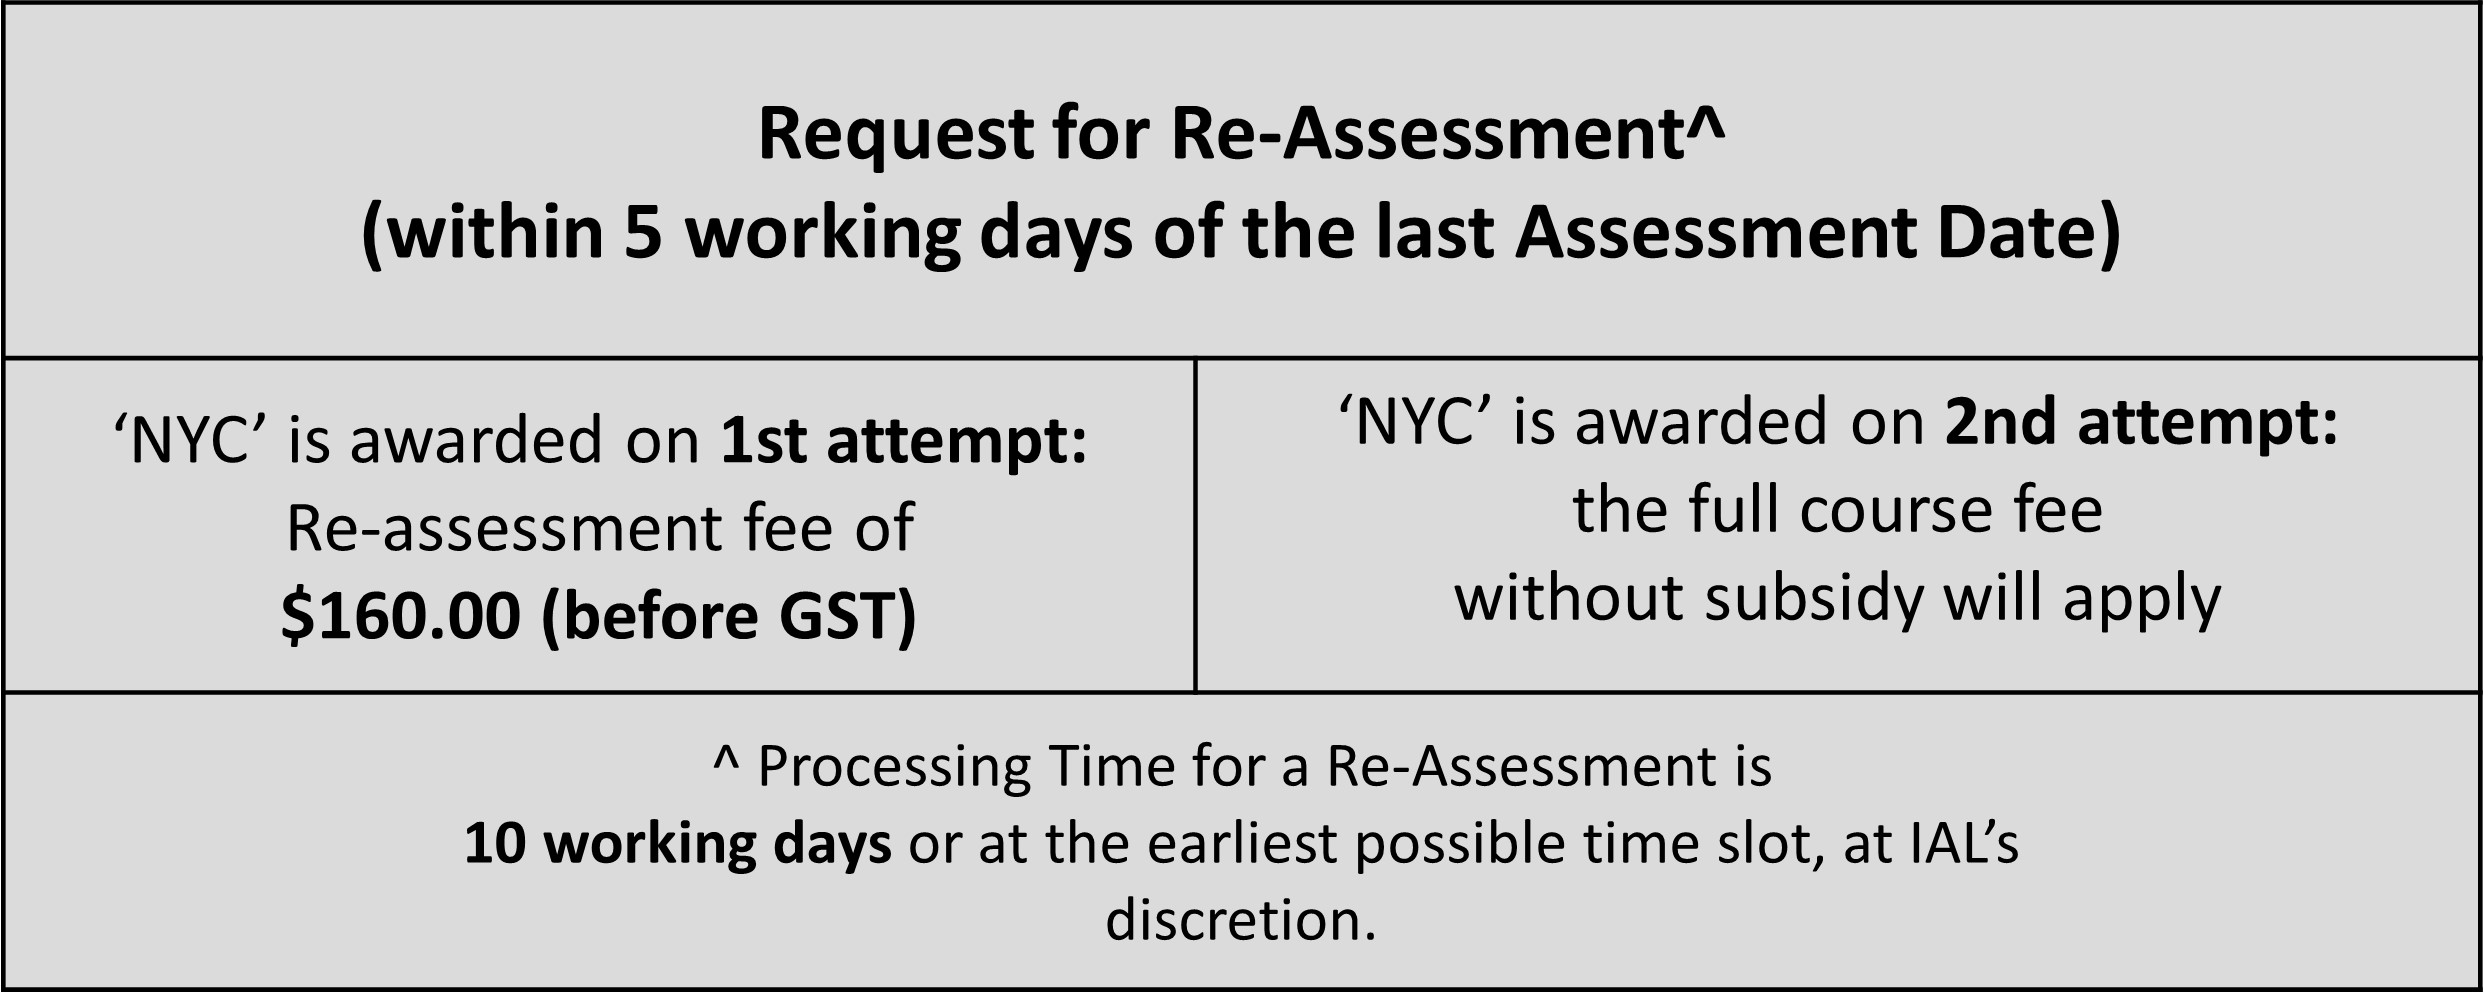 Re-assessment-(1).jpg